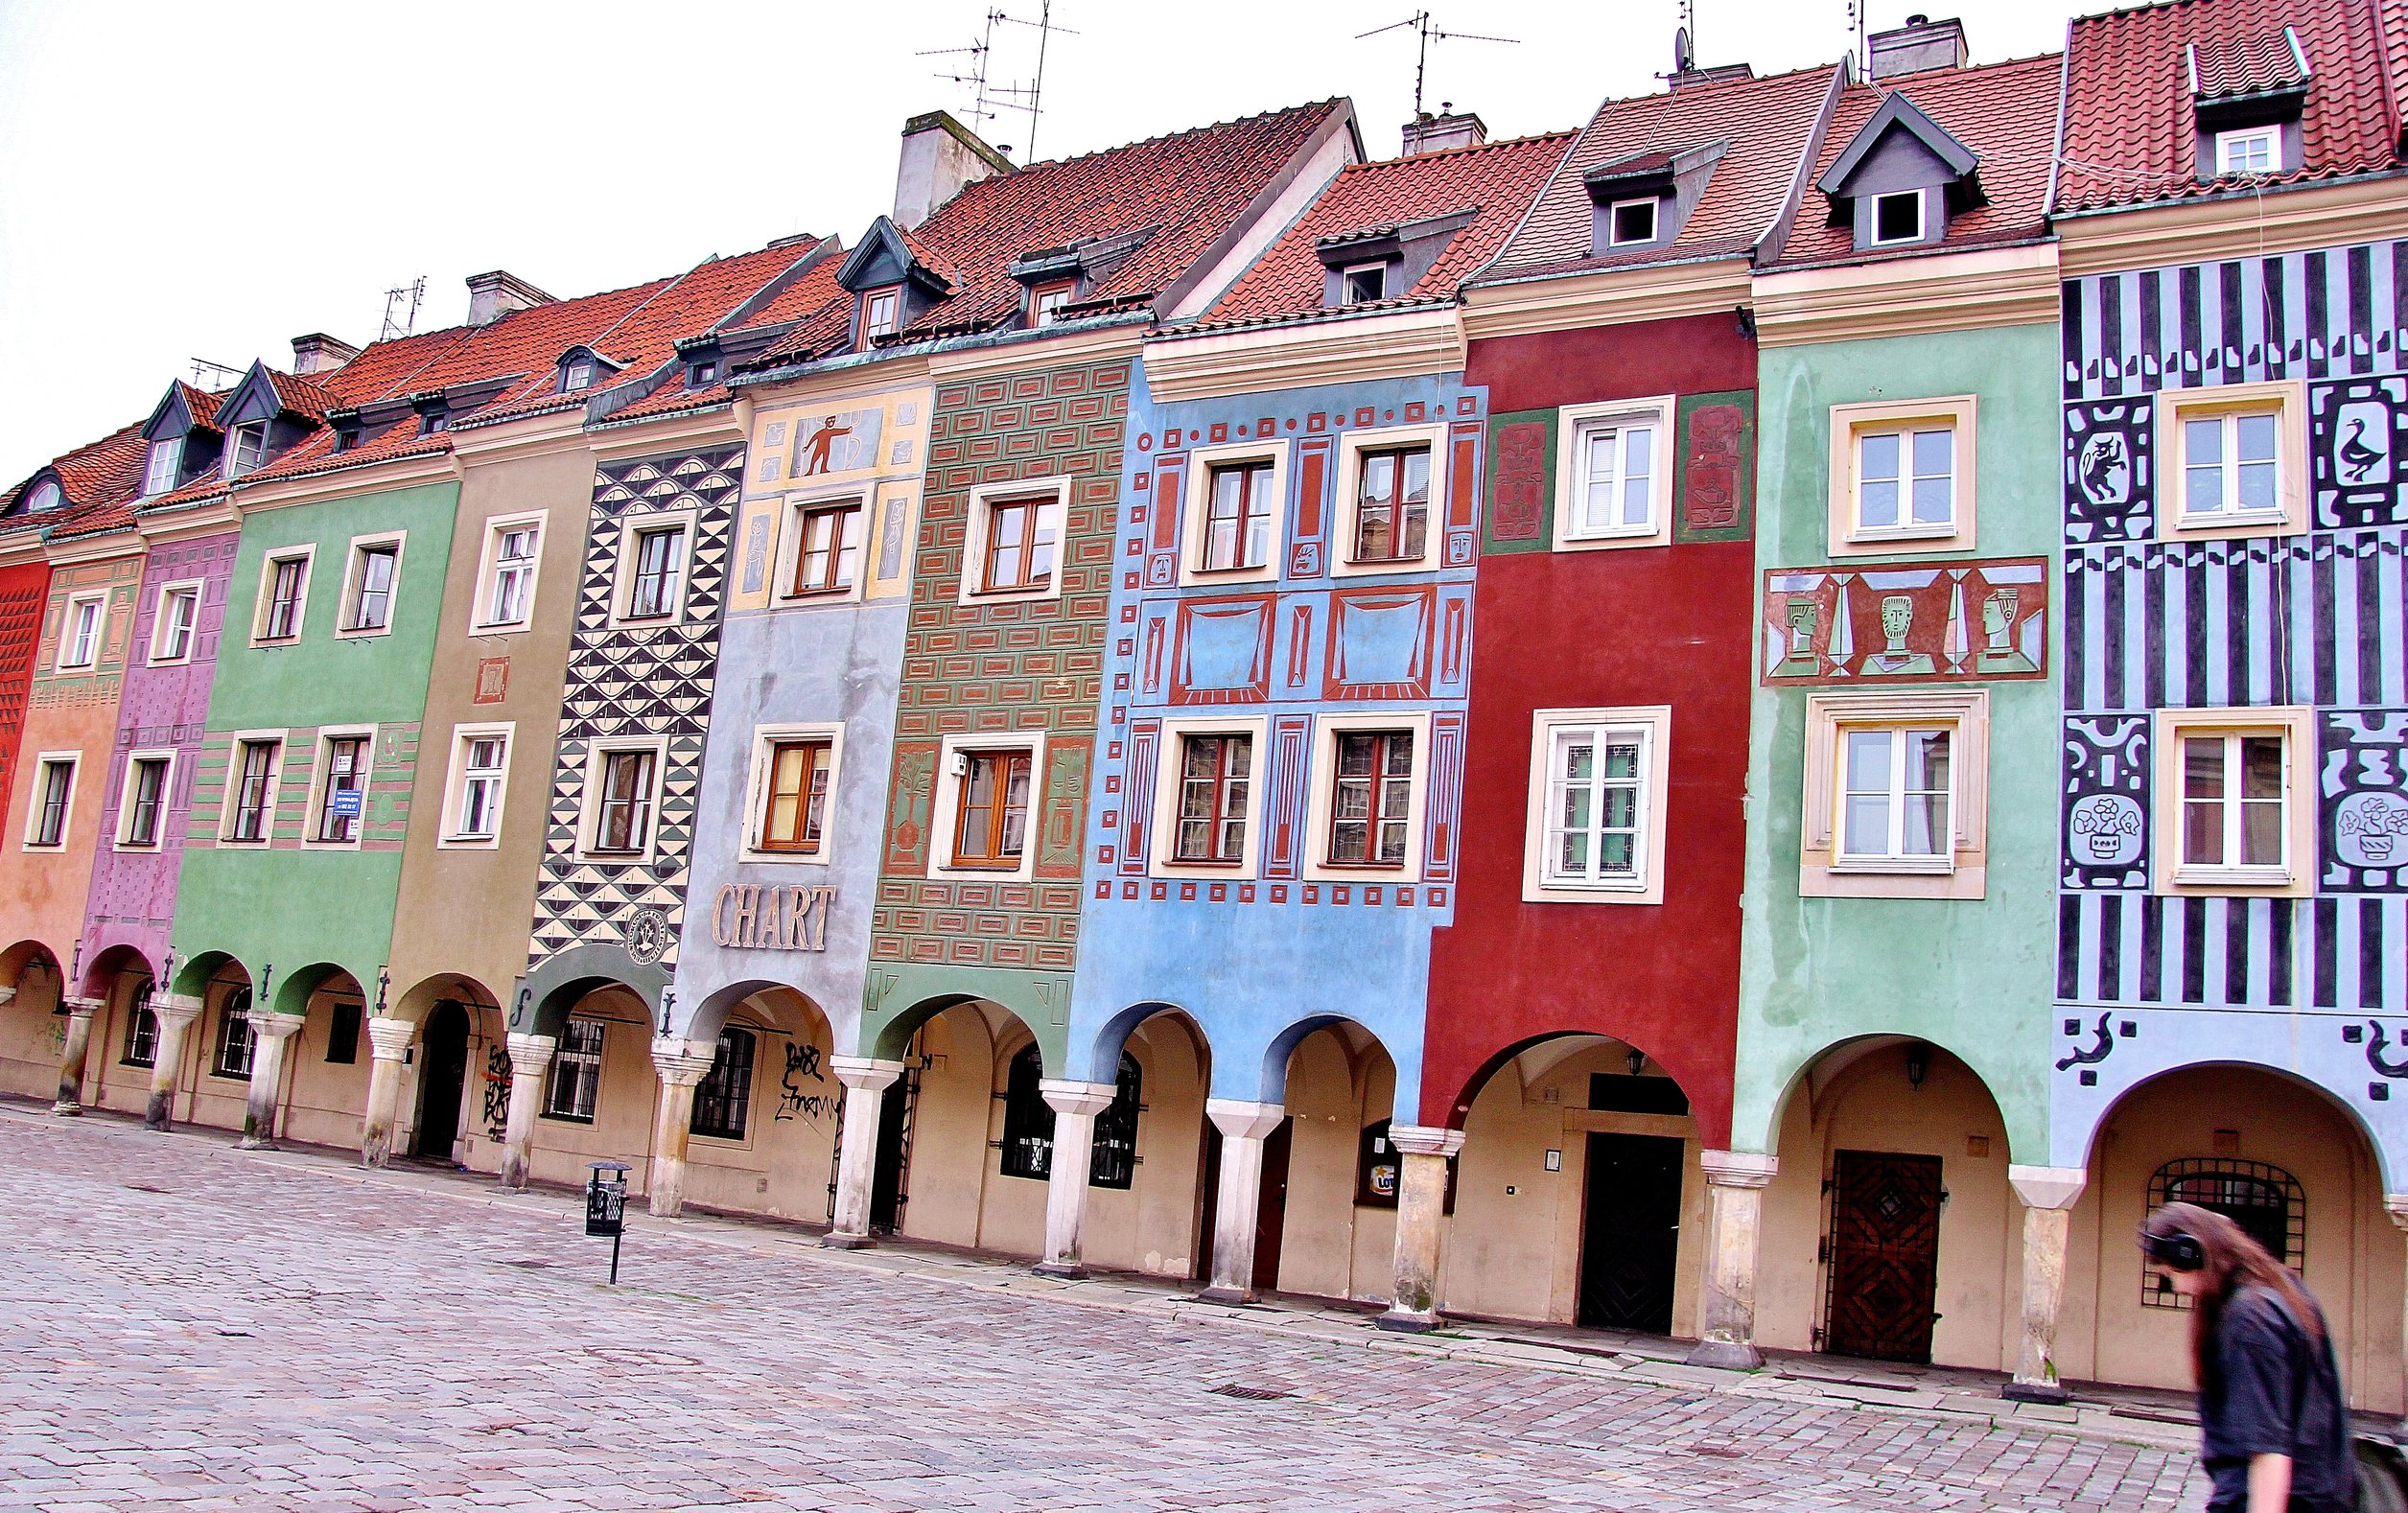 Stary Rynek, Poznan's old market square